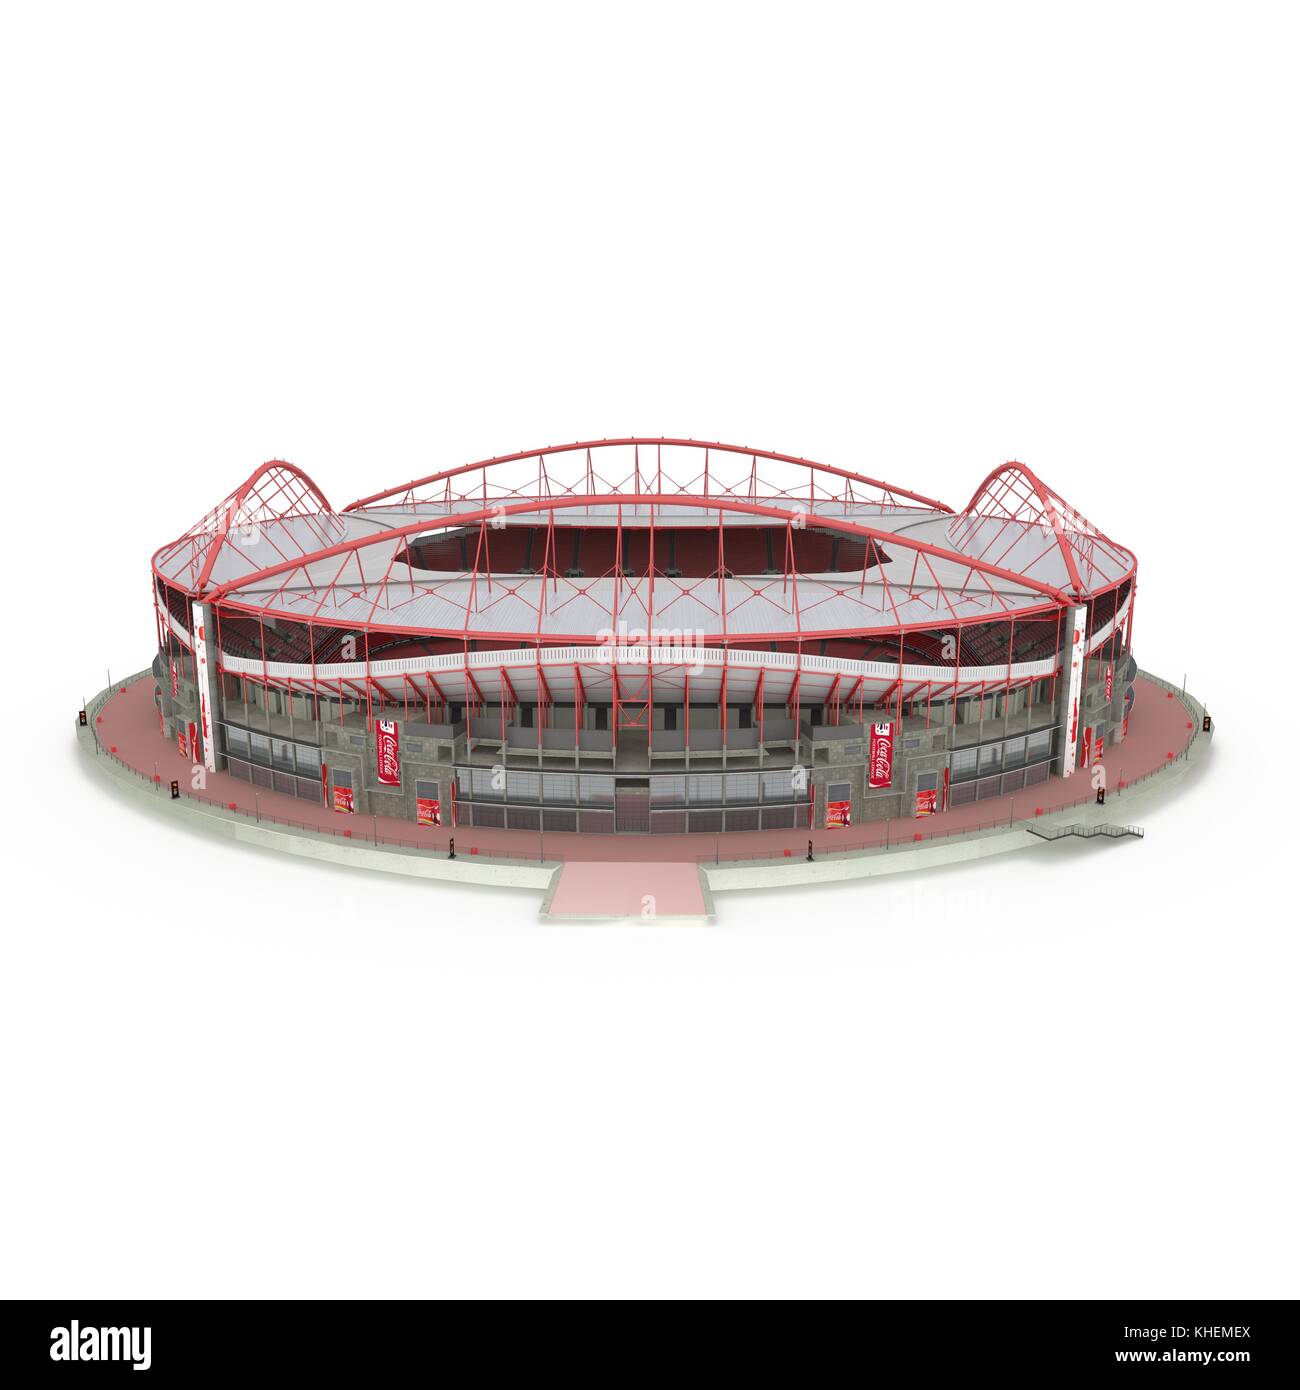 Stadium Estadio da Luz isolated on white 3d illustration Banque D'Images